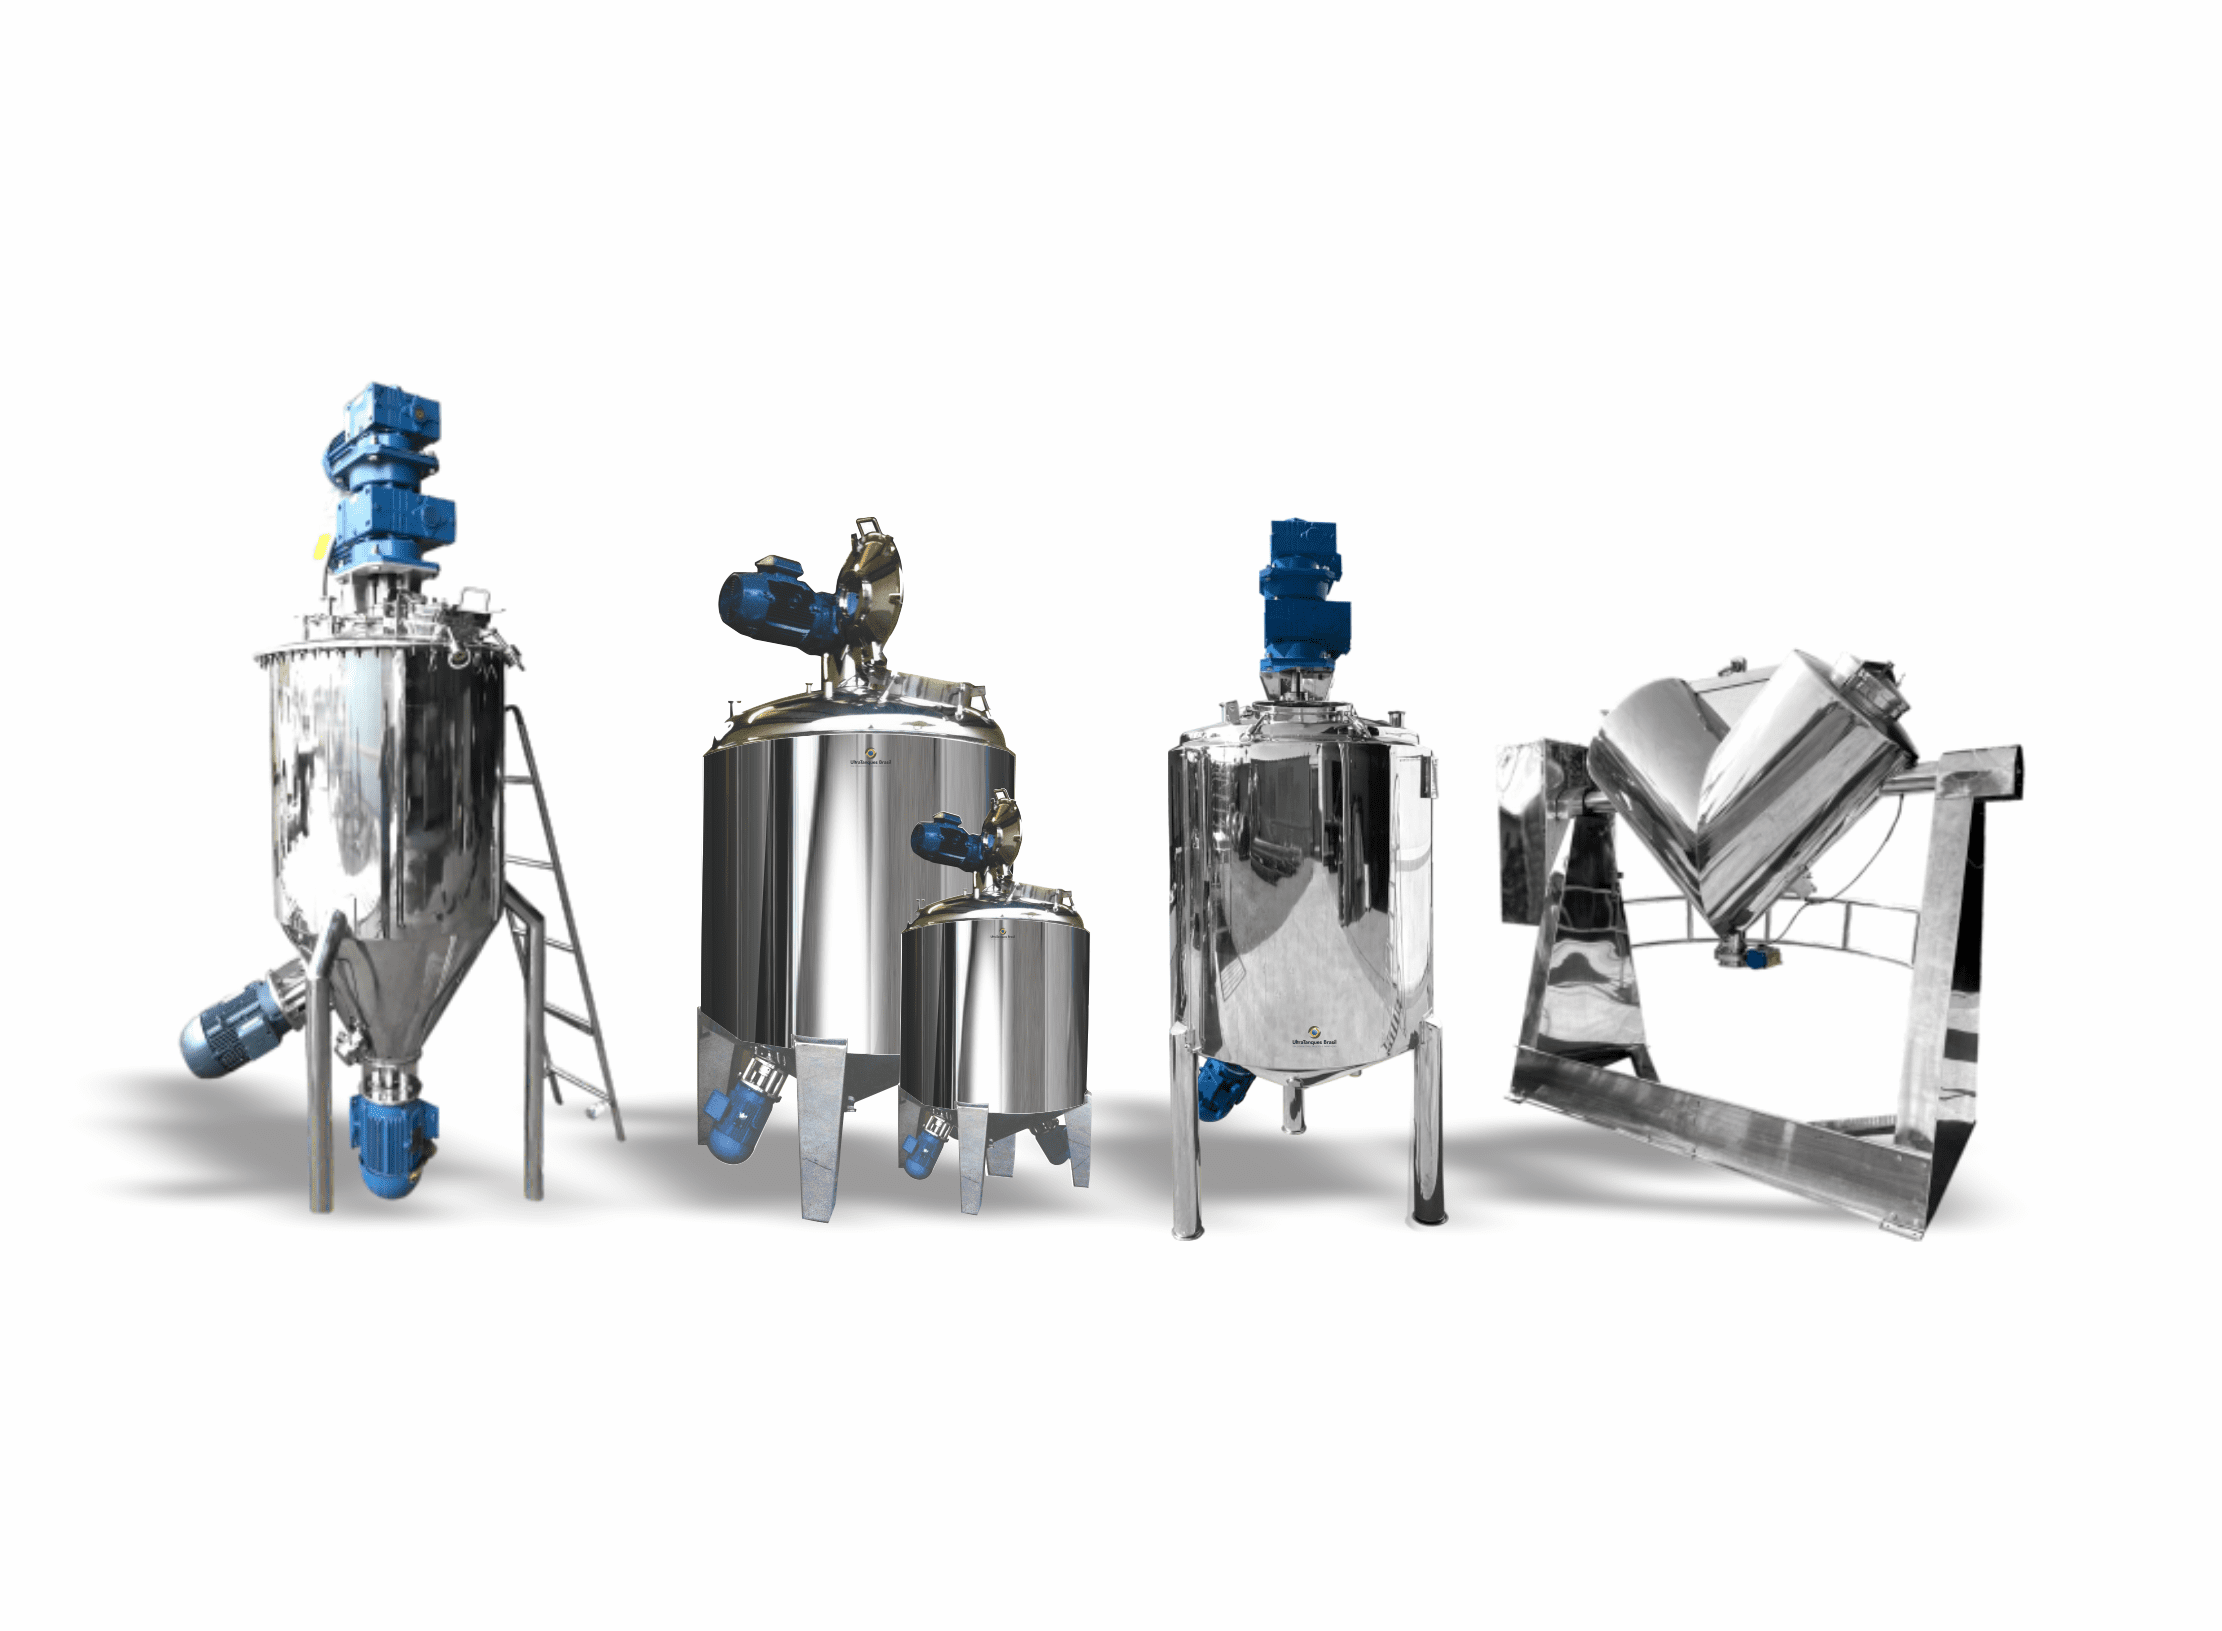 Tanque Misturador em Aço Inox para processos industriais, garantindo eficiência e qualidade em todas as etapas da mistura.